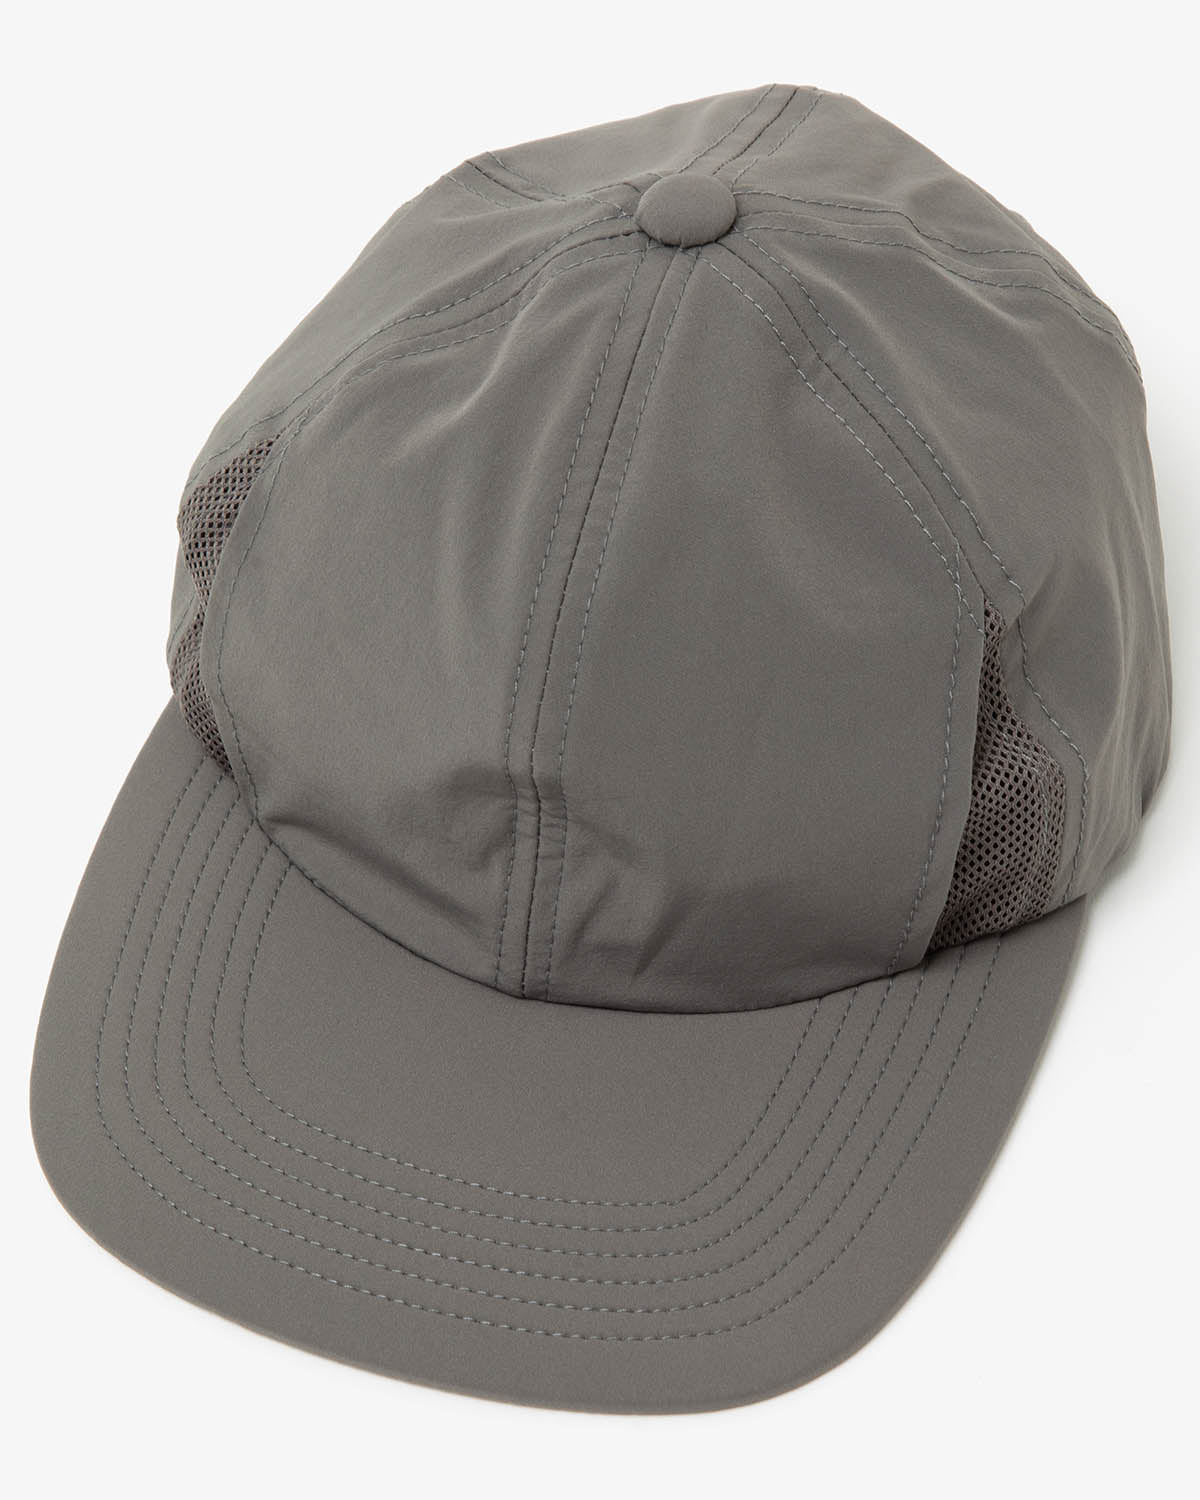 BASE CAP